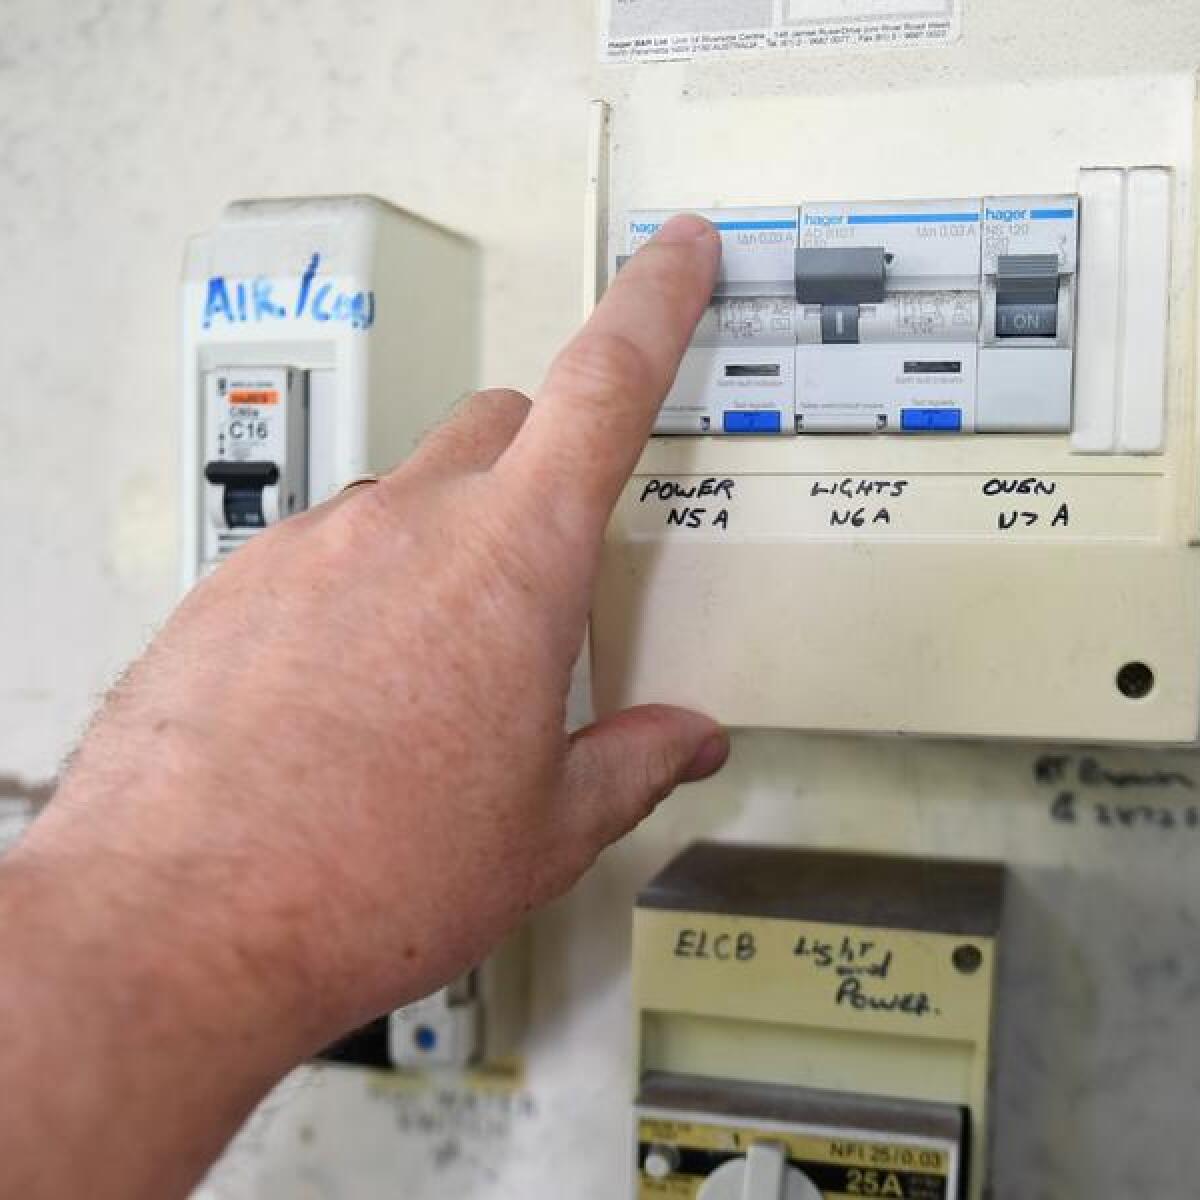 Residential power meter